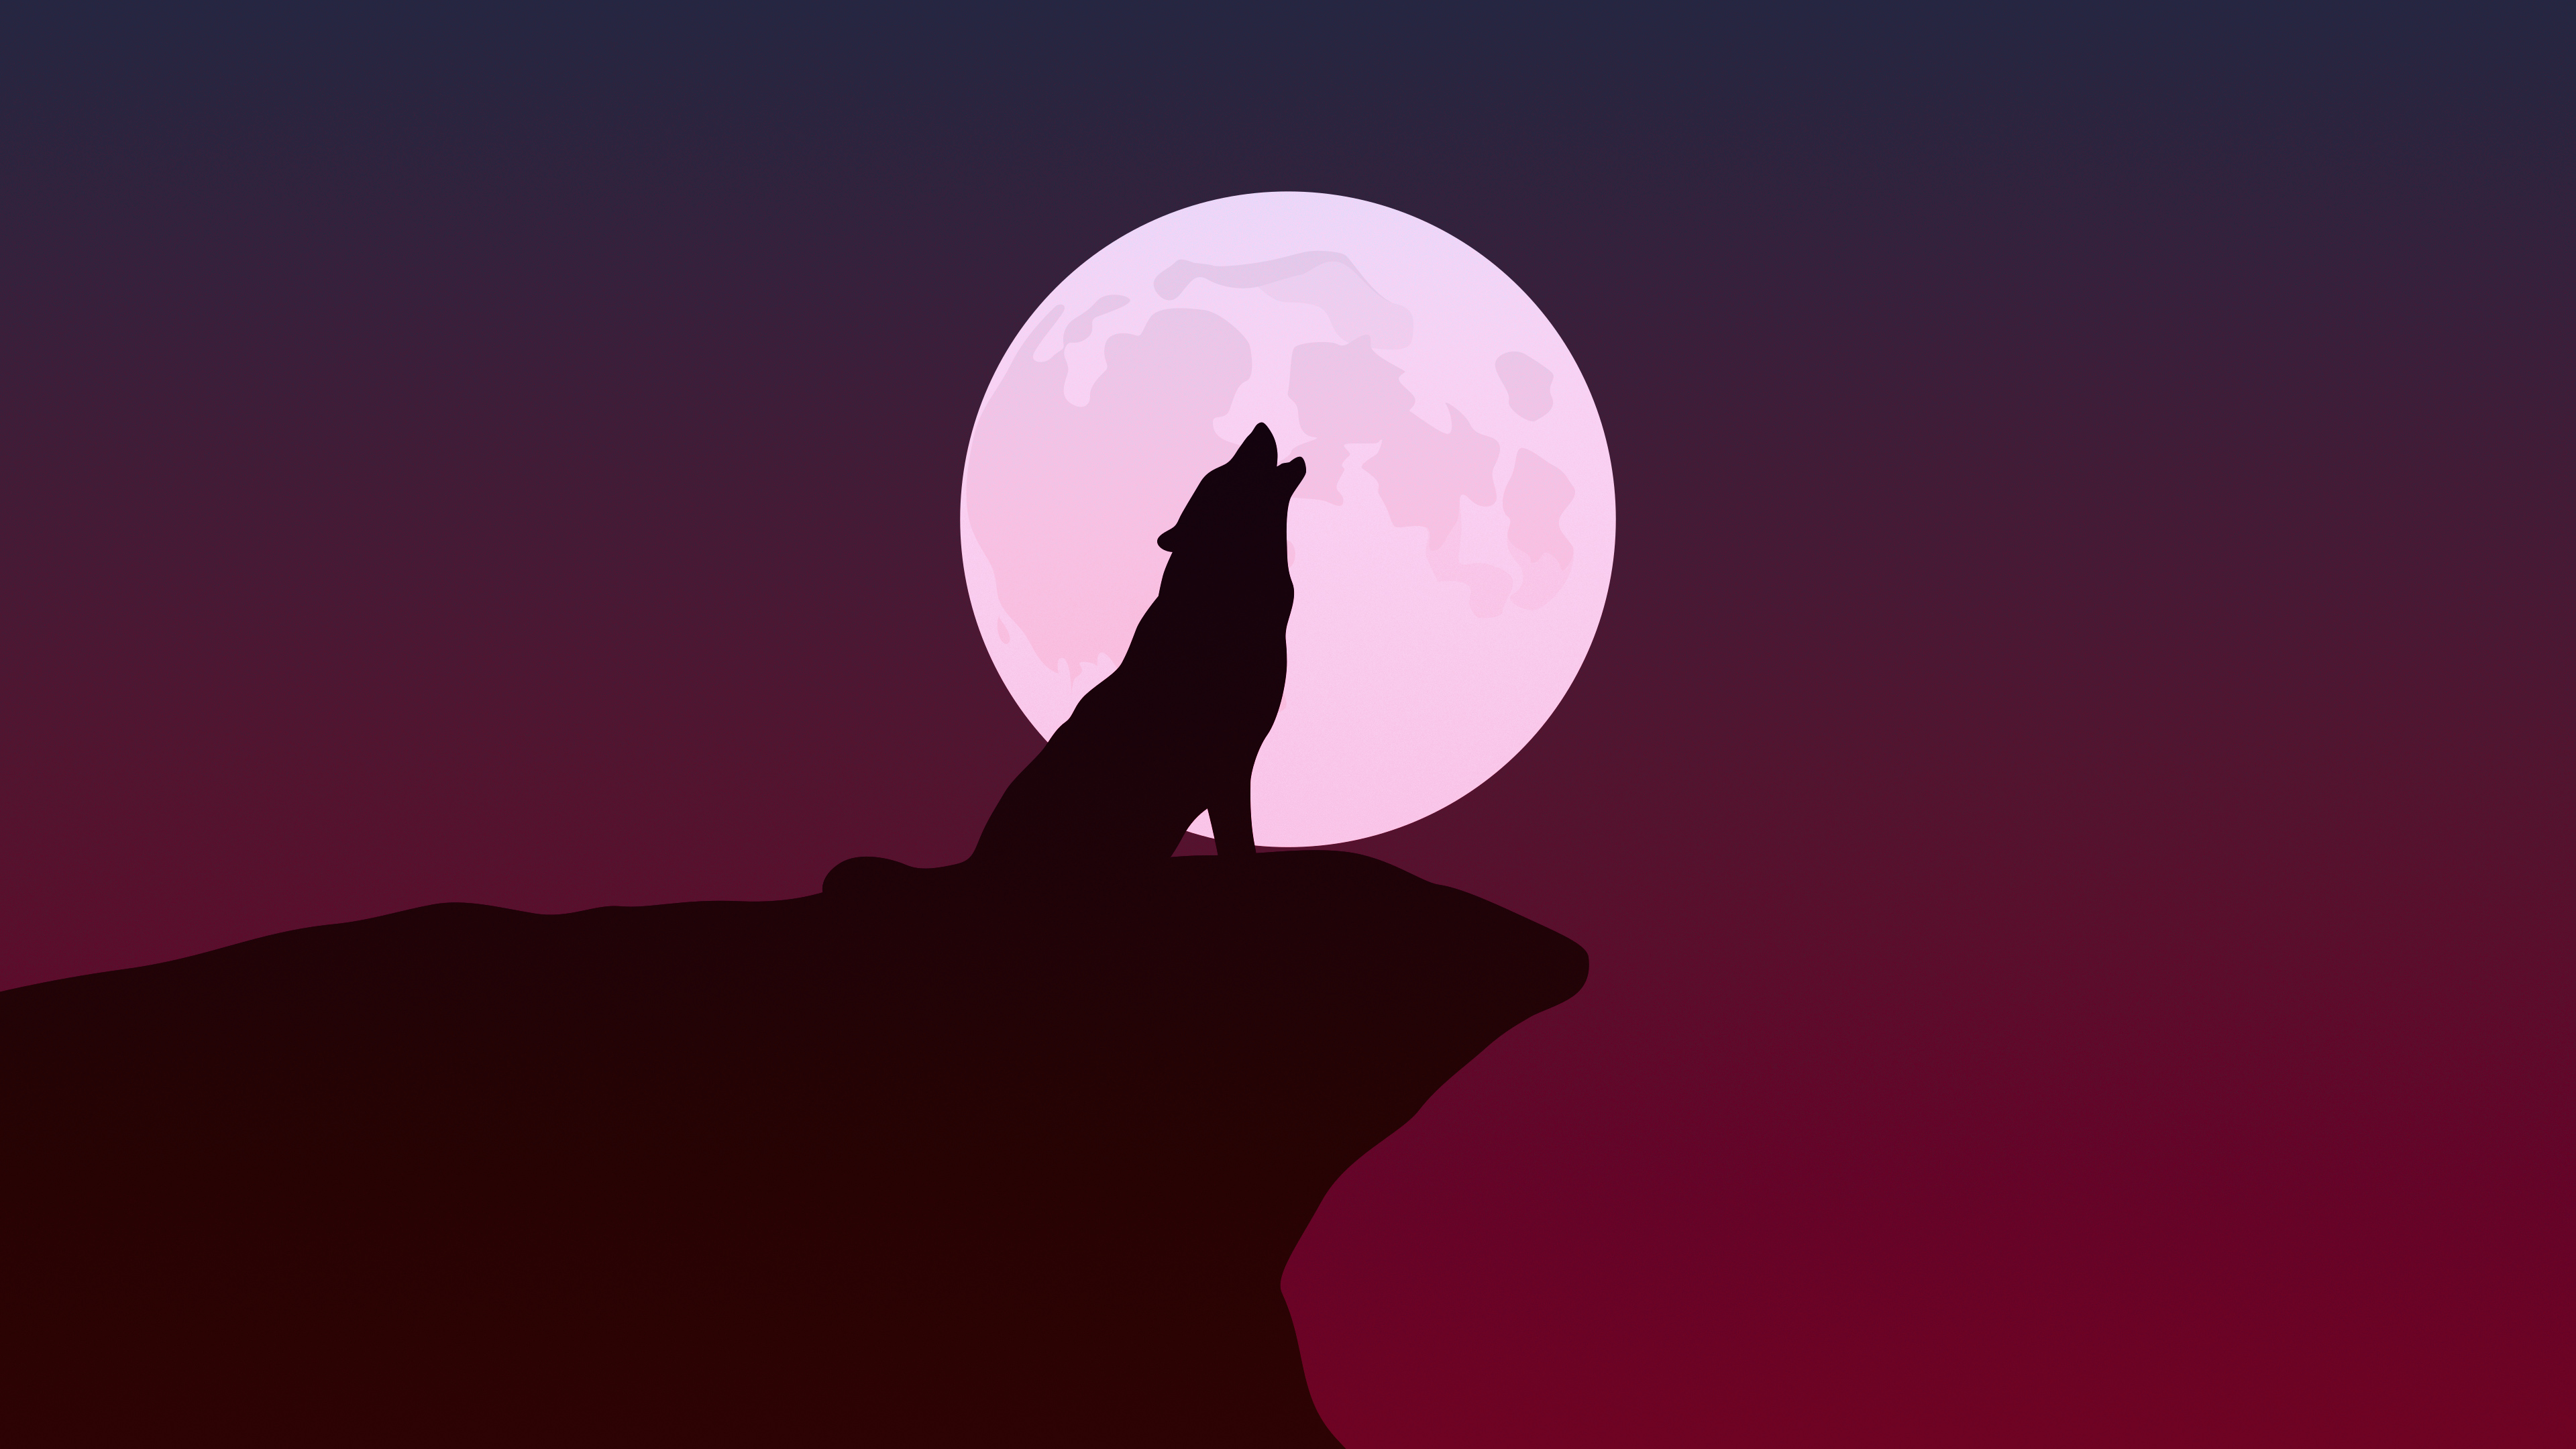 Được thiết kế với Fantasy Wolf wallpaper sẽ giúp bạn khám phá một thế giới mới đầy màu sắc và tiềm năng. Hình ảnh vô cùng nghệ thuật với những con sói huyền bí sẽ khiến bạn say mê ngay từ lần đầu tiên nhìn thấy. Hãy cùng nhìn thấy được bản thân mình qua bộ hình này.